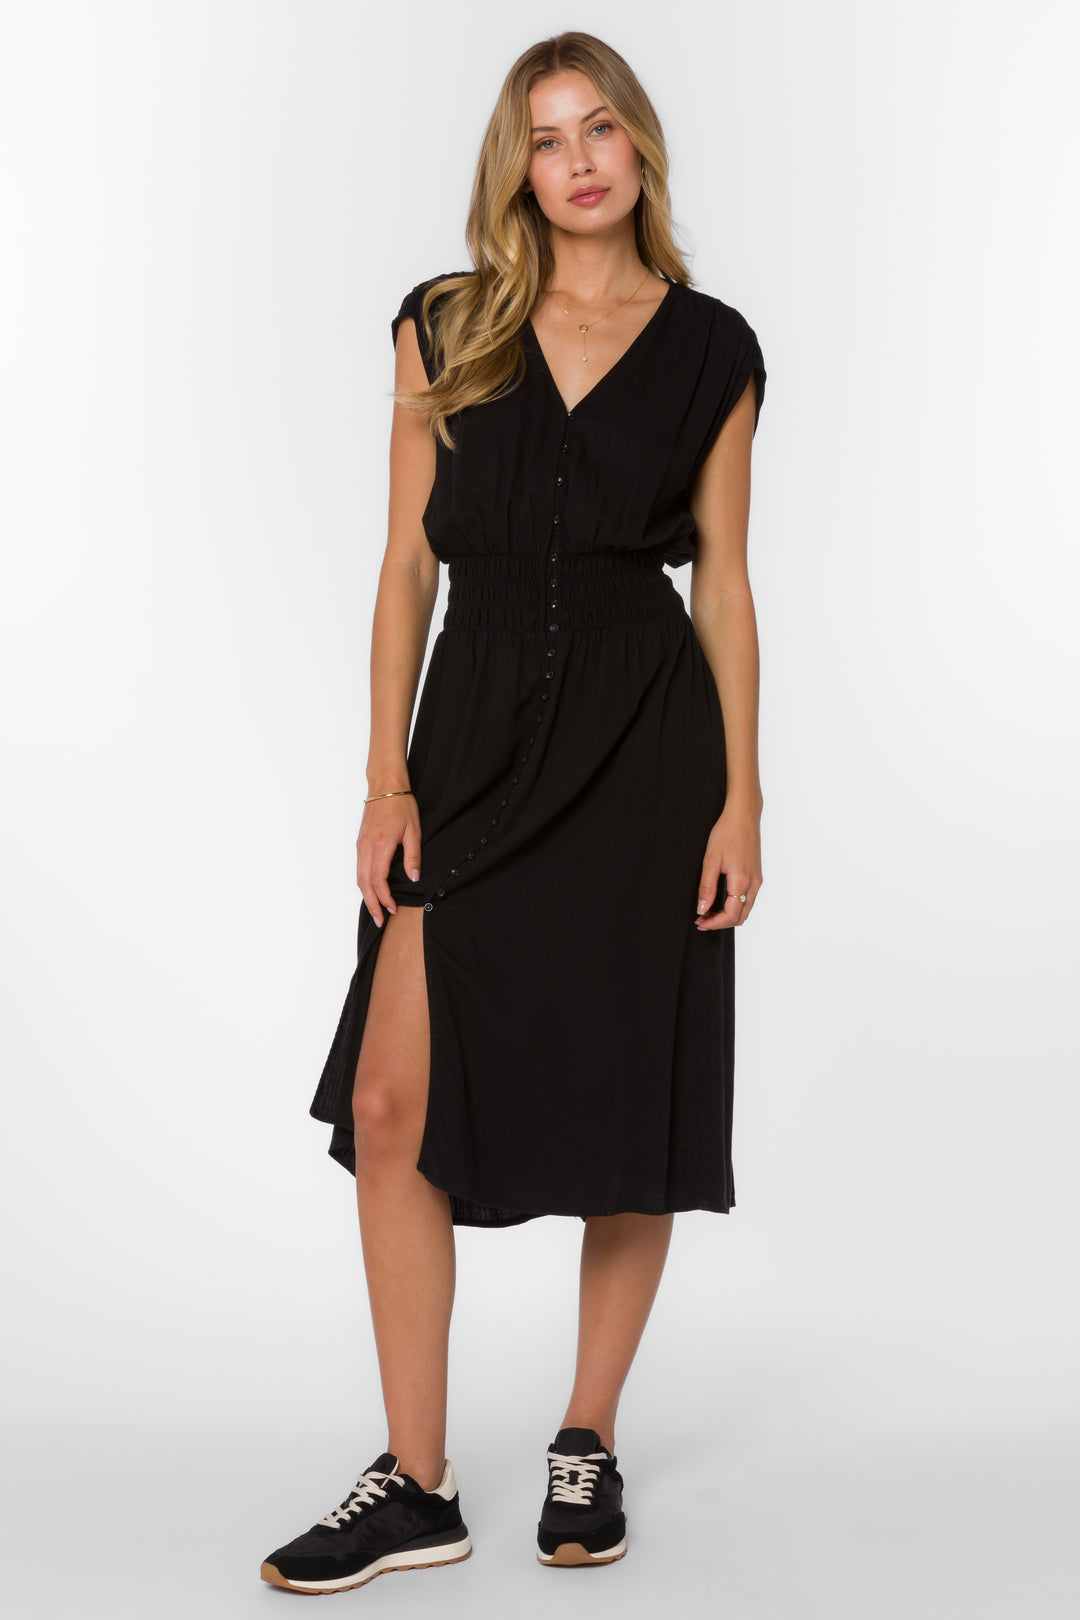 Persa Black Dress - Dresses - Velvet Heart Clothing